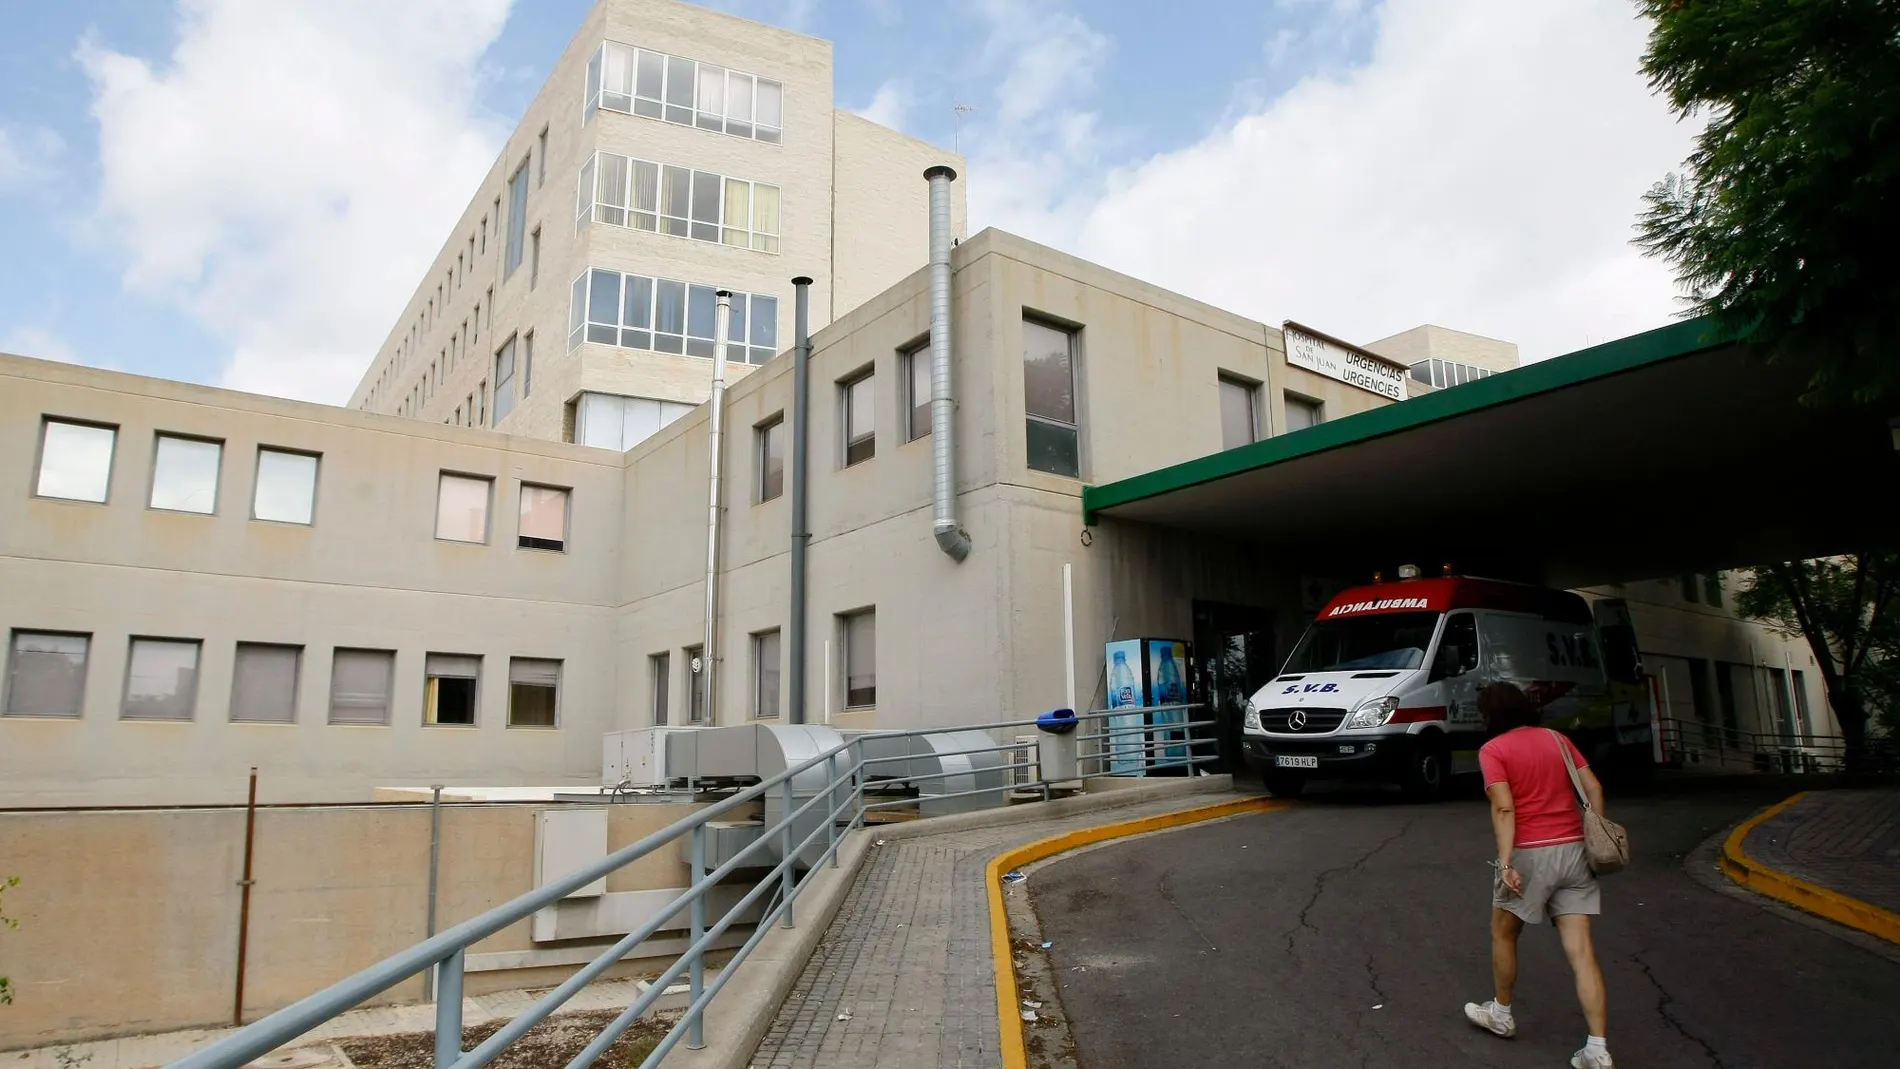 Acceso a Urgencias del hospital Hospital Sant Joan de Alicante